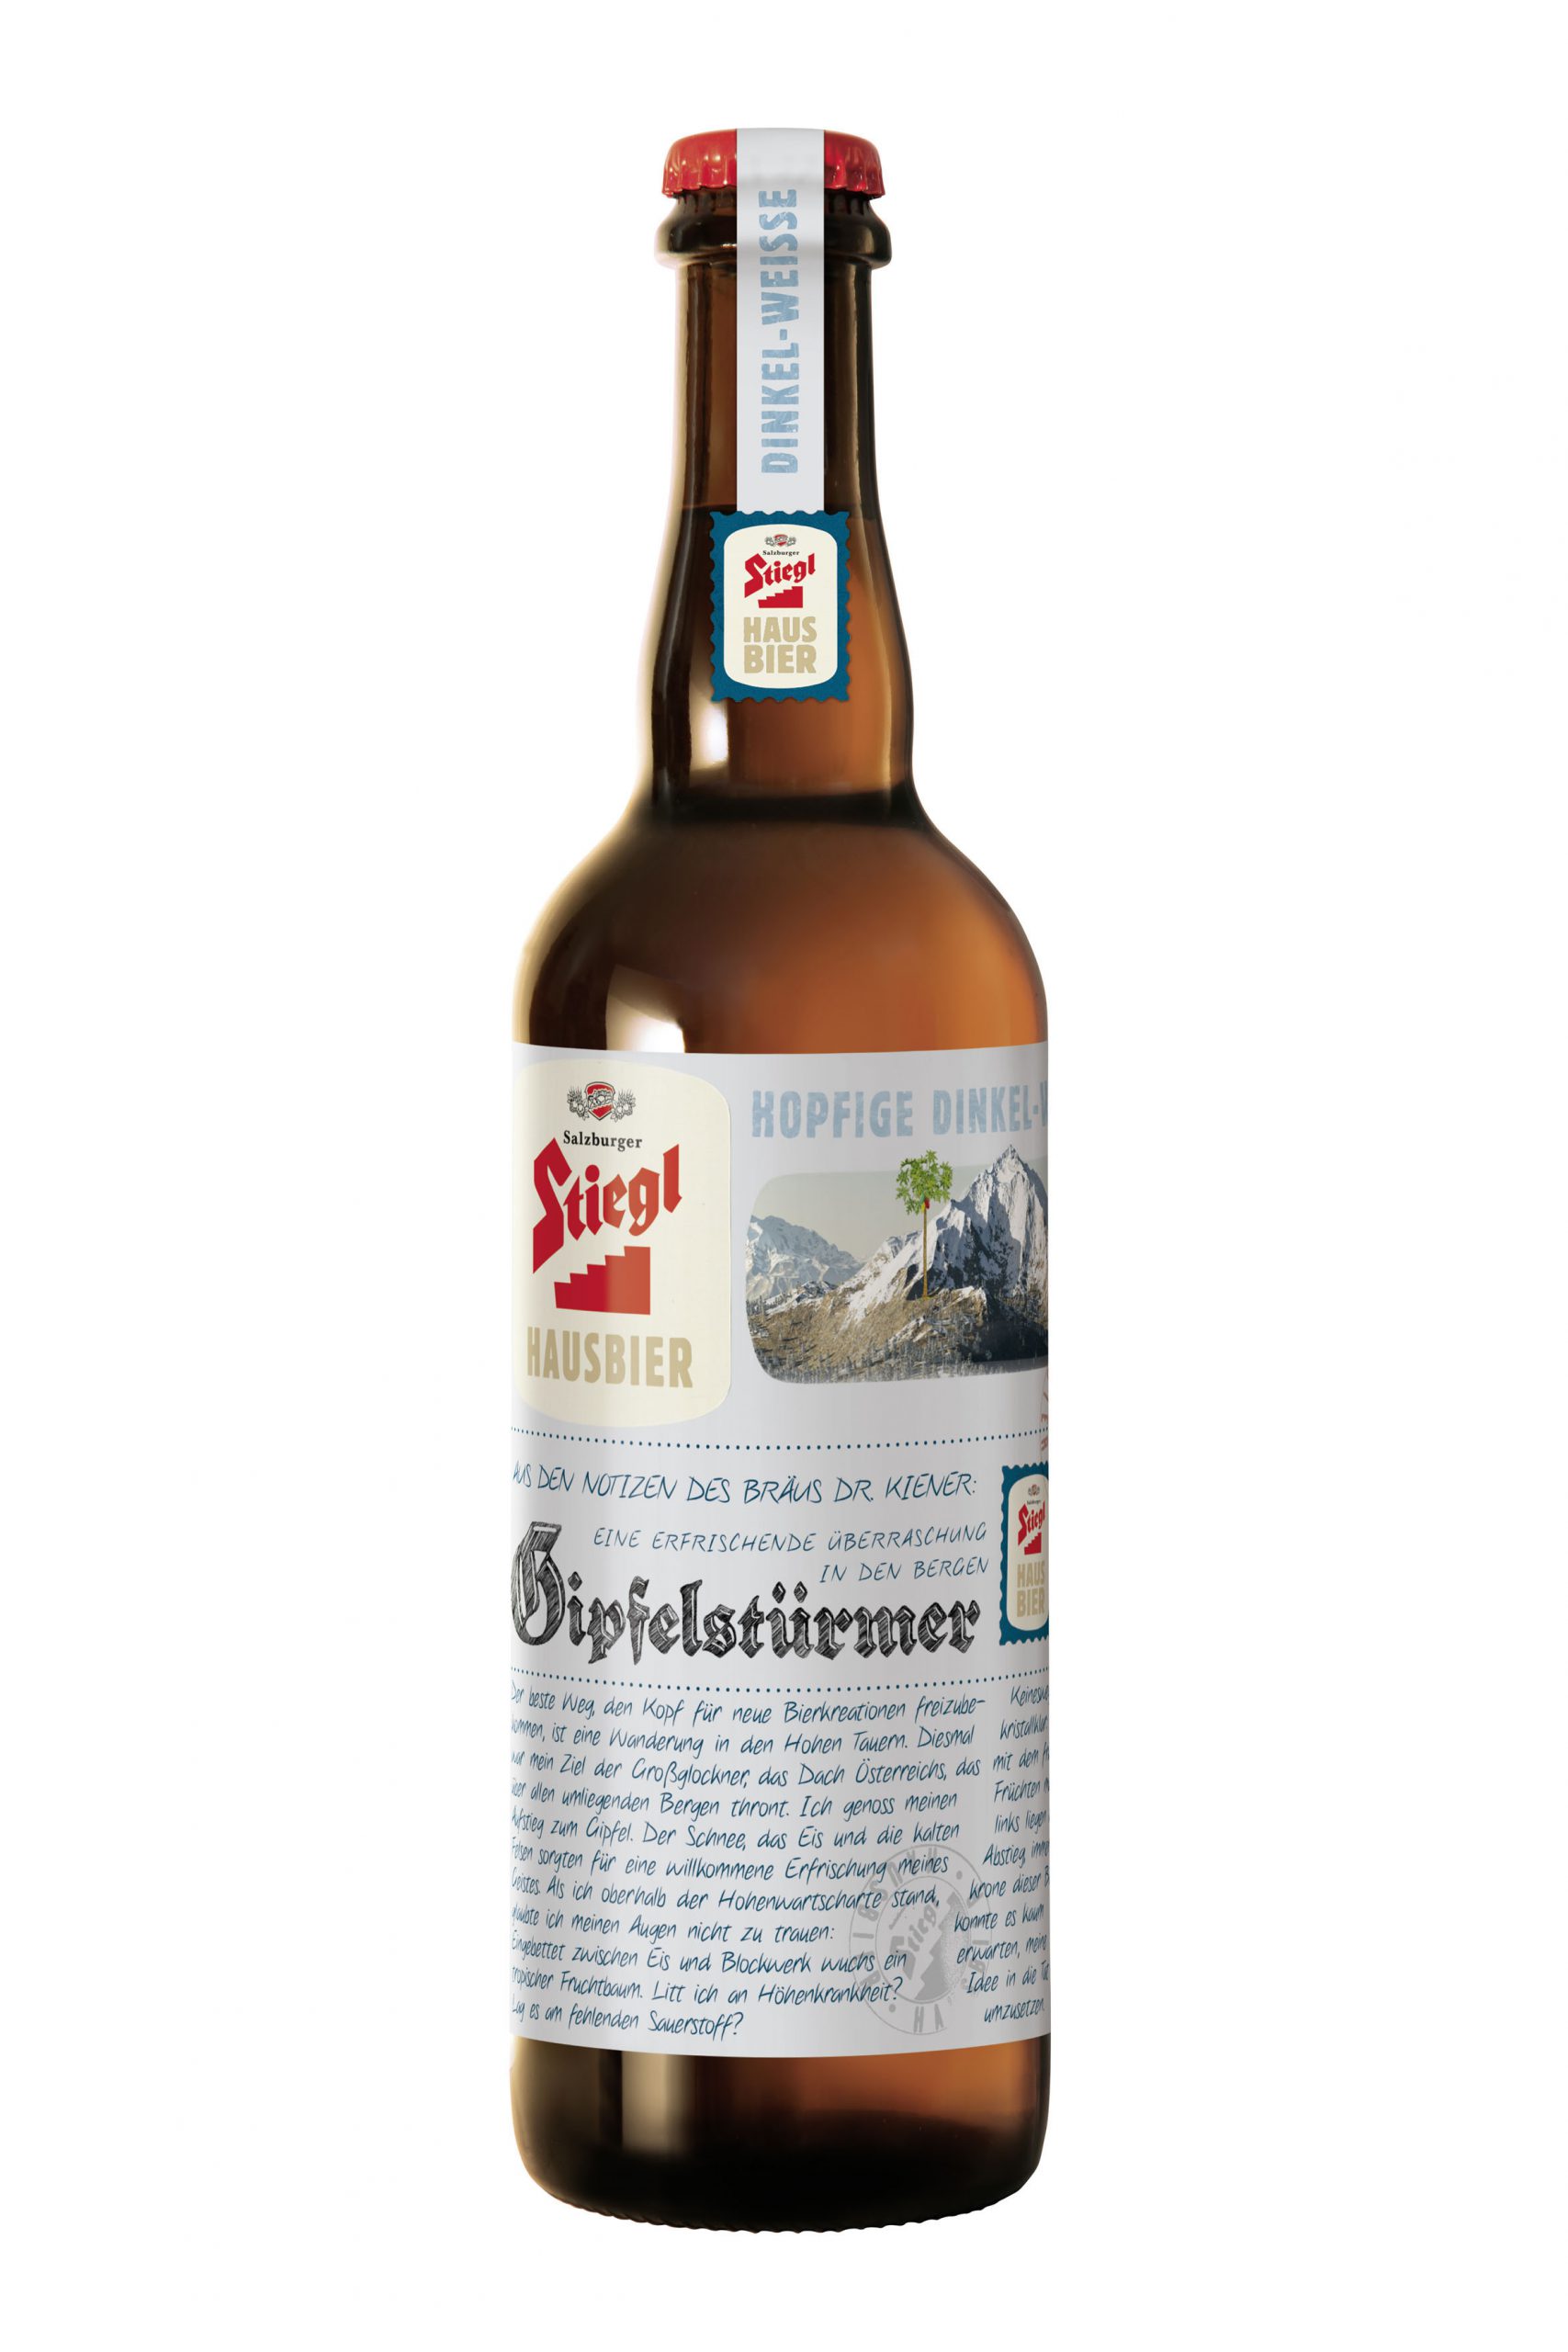 Platz 1 für das Stiegl-Hausbier Gipfelstürmer bei der Austrian Beer Challenge.